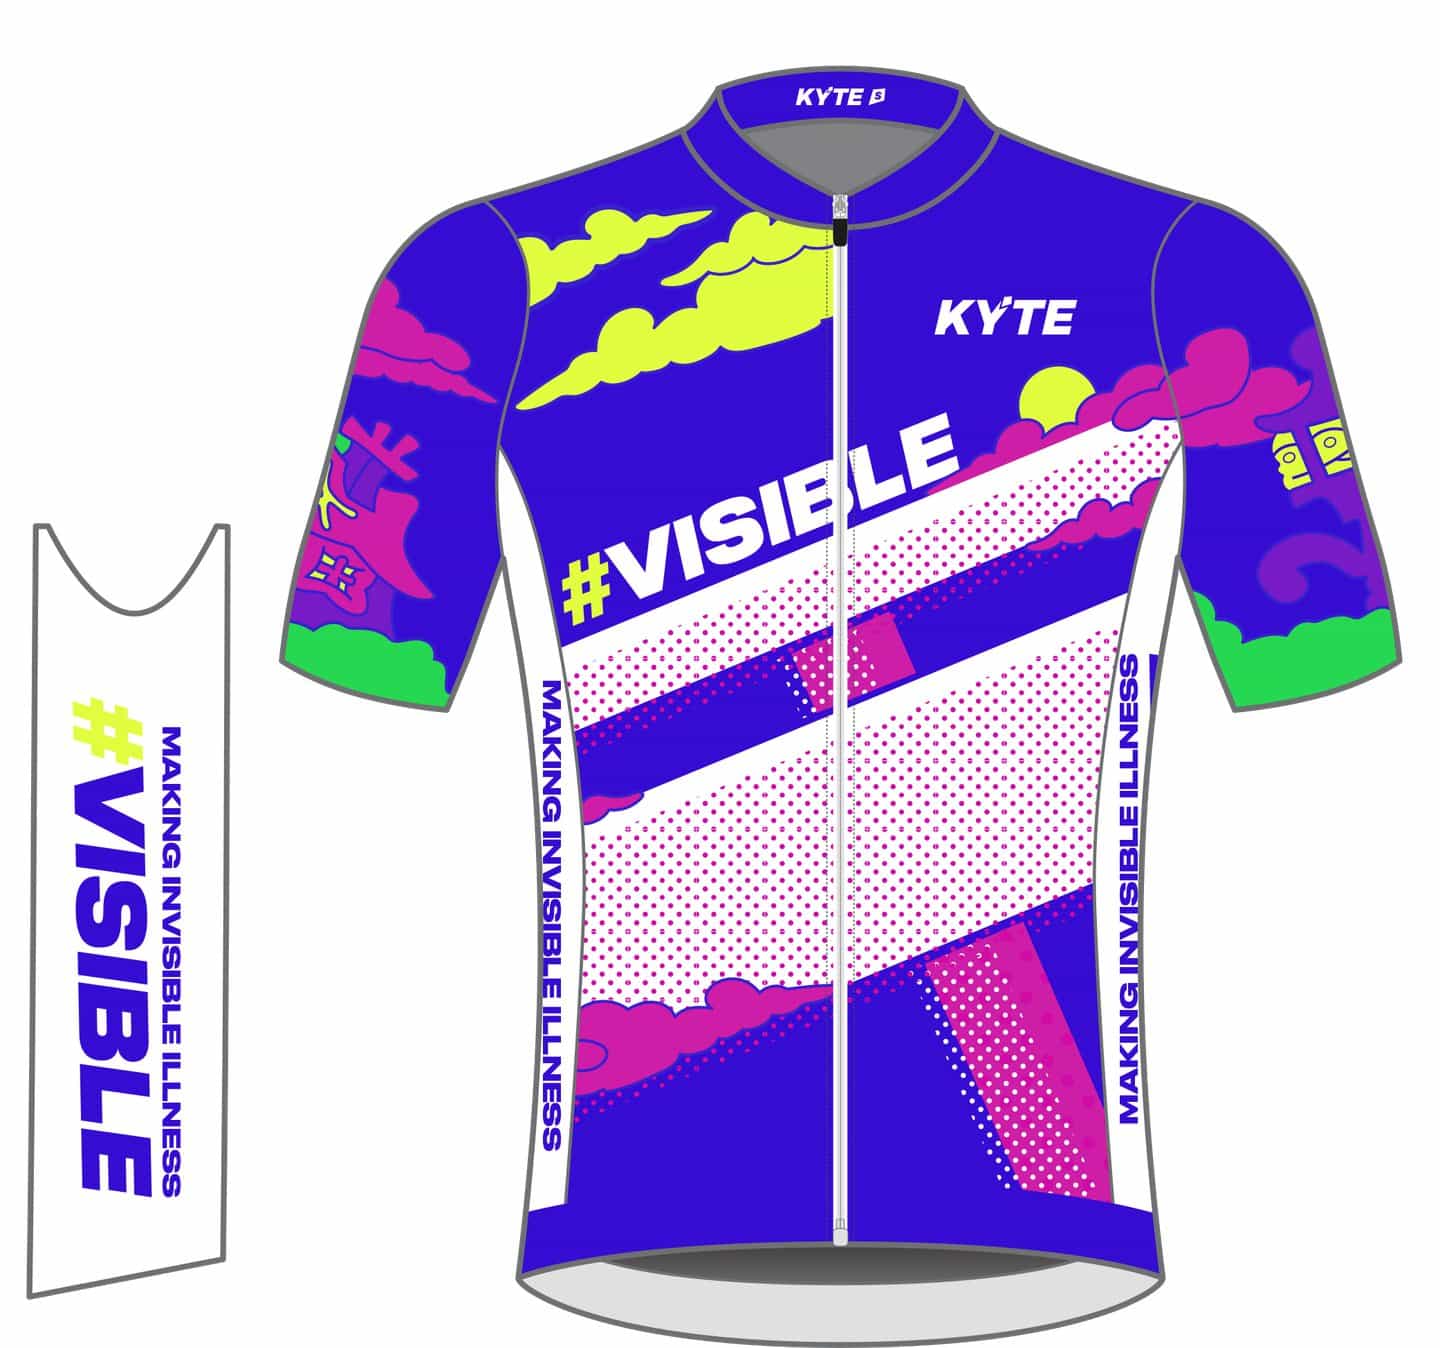 El maillot de ciclismo de Kyle Platts para Kyte hace que "lo invisible sea visible"